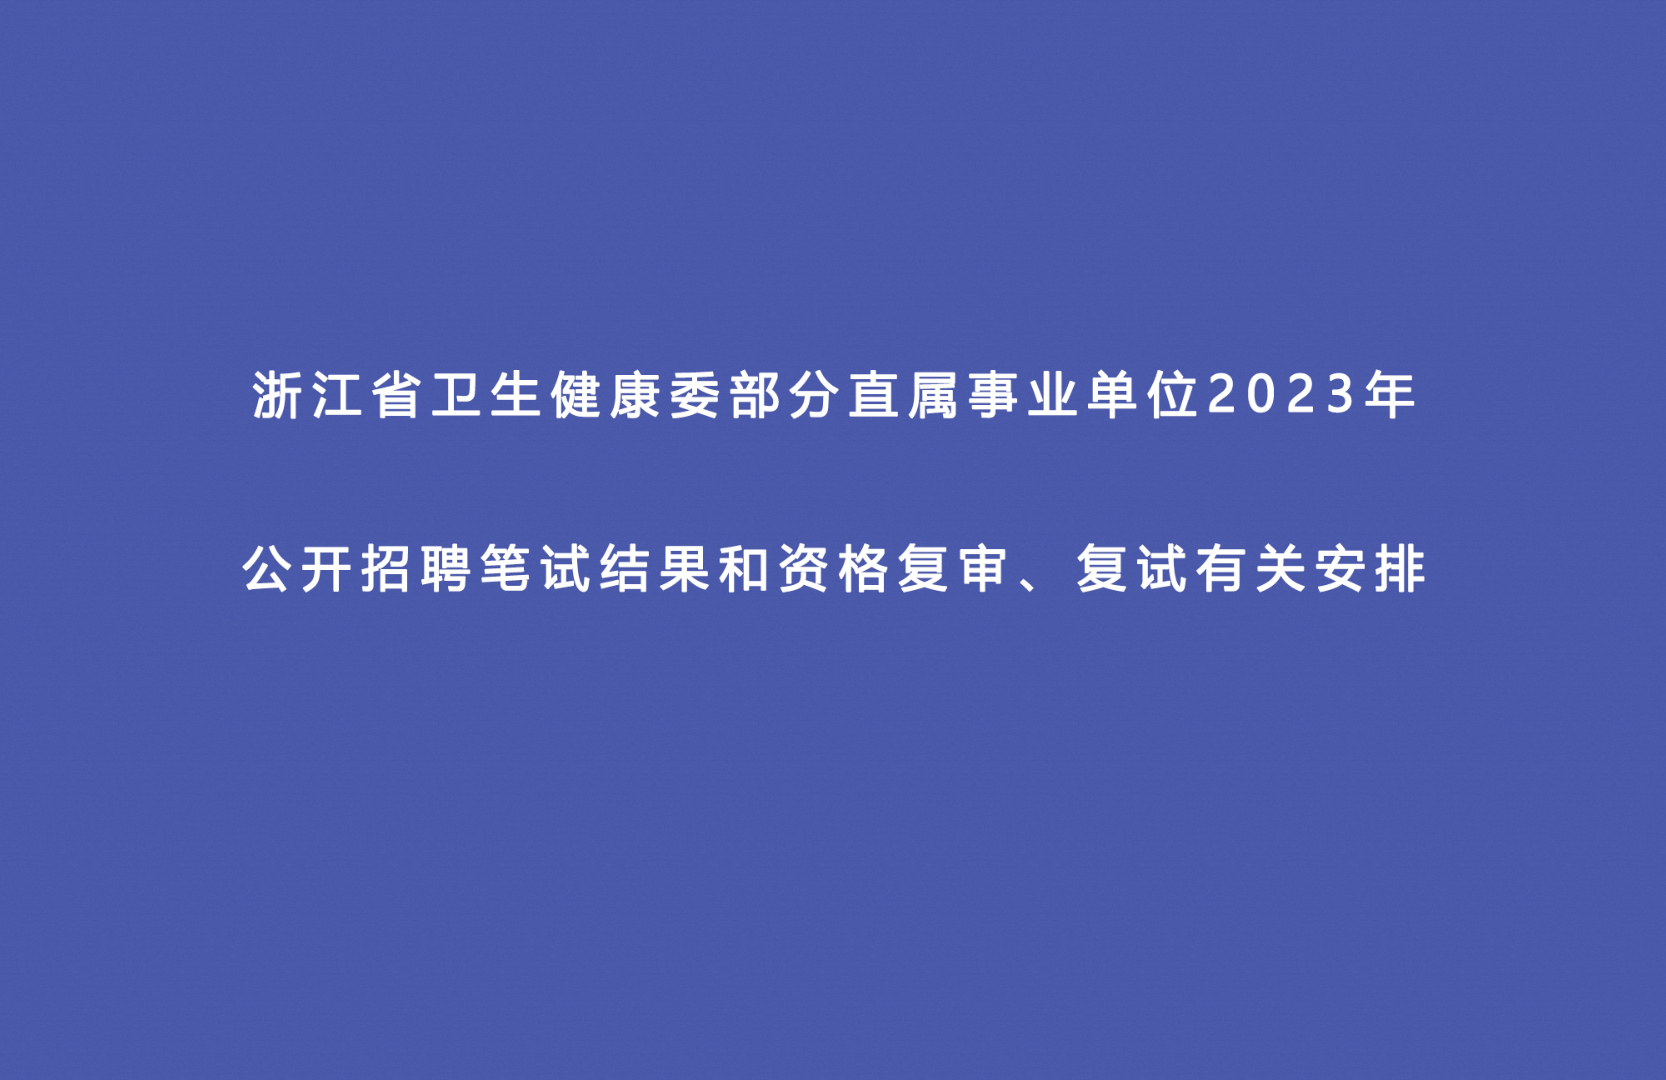 浙江省卫生健康委部分直属事业单位2023年 公开招聘笔试结果和资格复审、复试有关安排